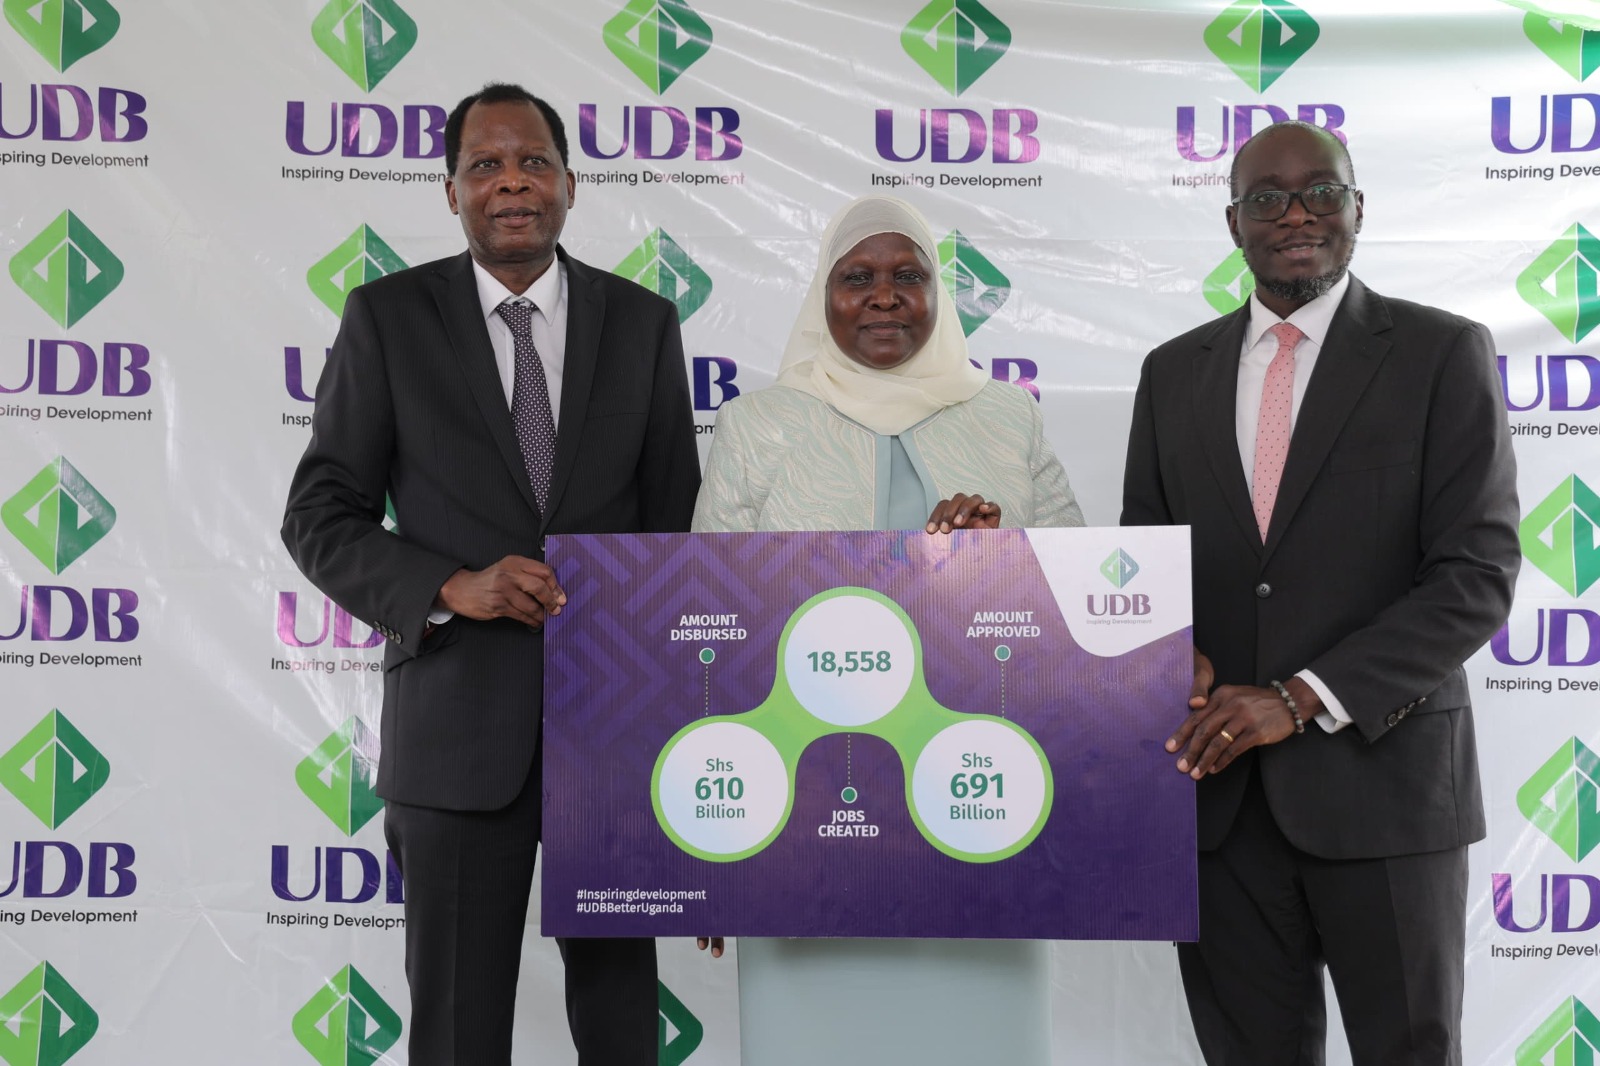 UDB loan portfolio grows by 21%